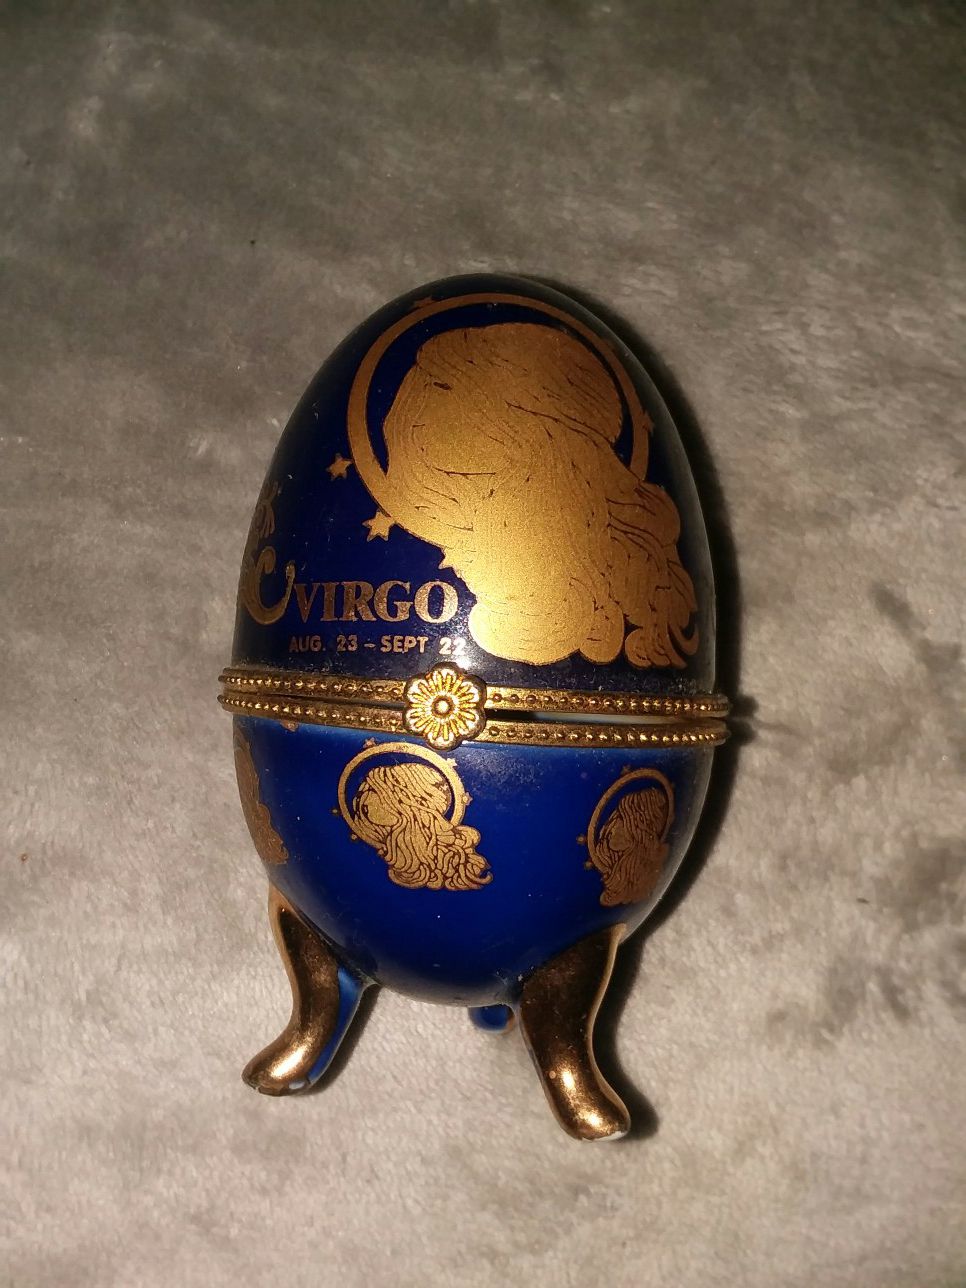 Virgo glass collectible egg